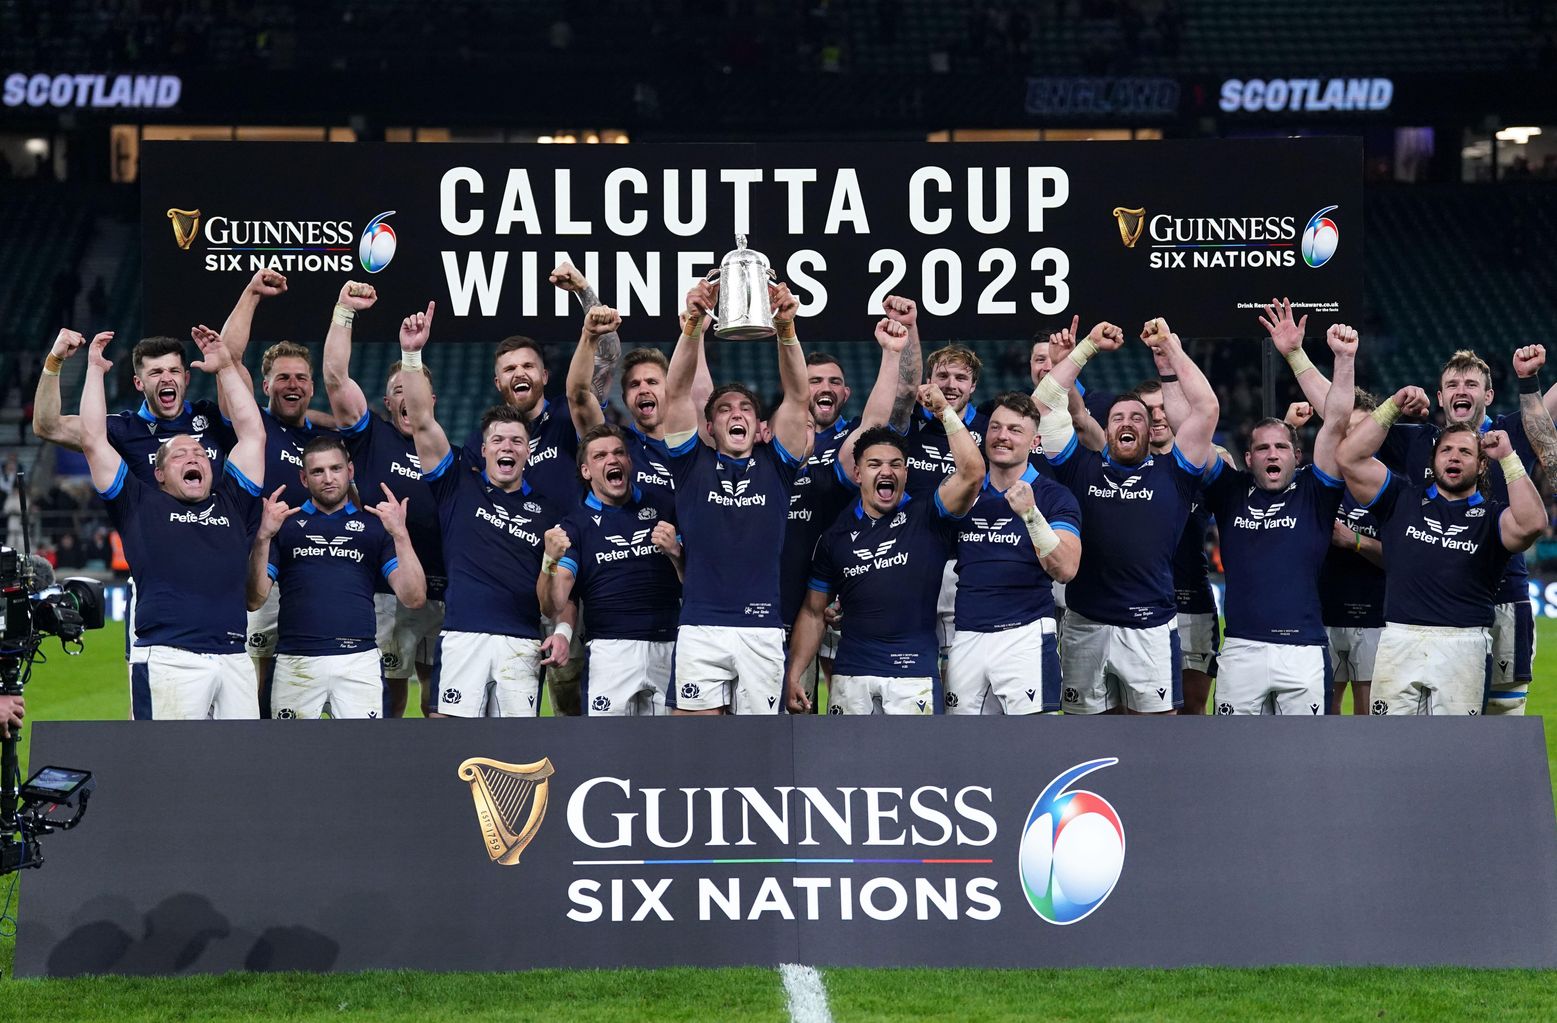 Scotland claim third Calcutta cup win in a row since 1972